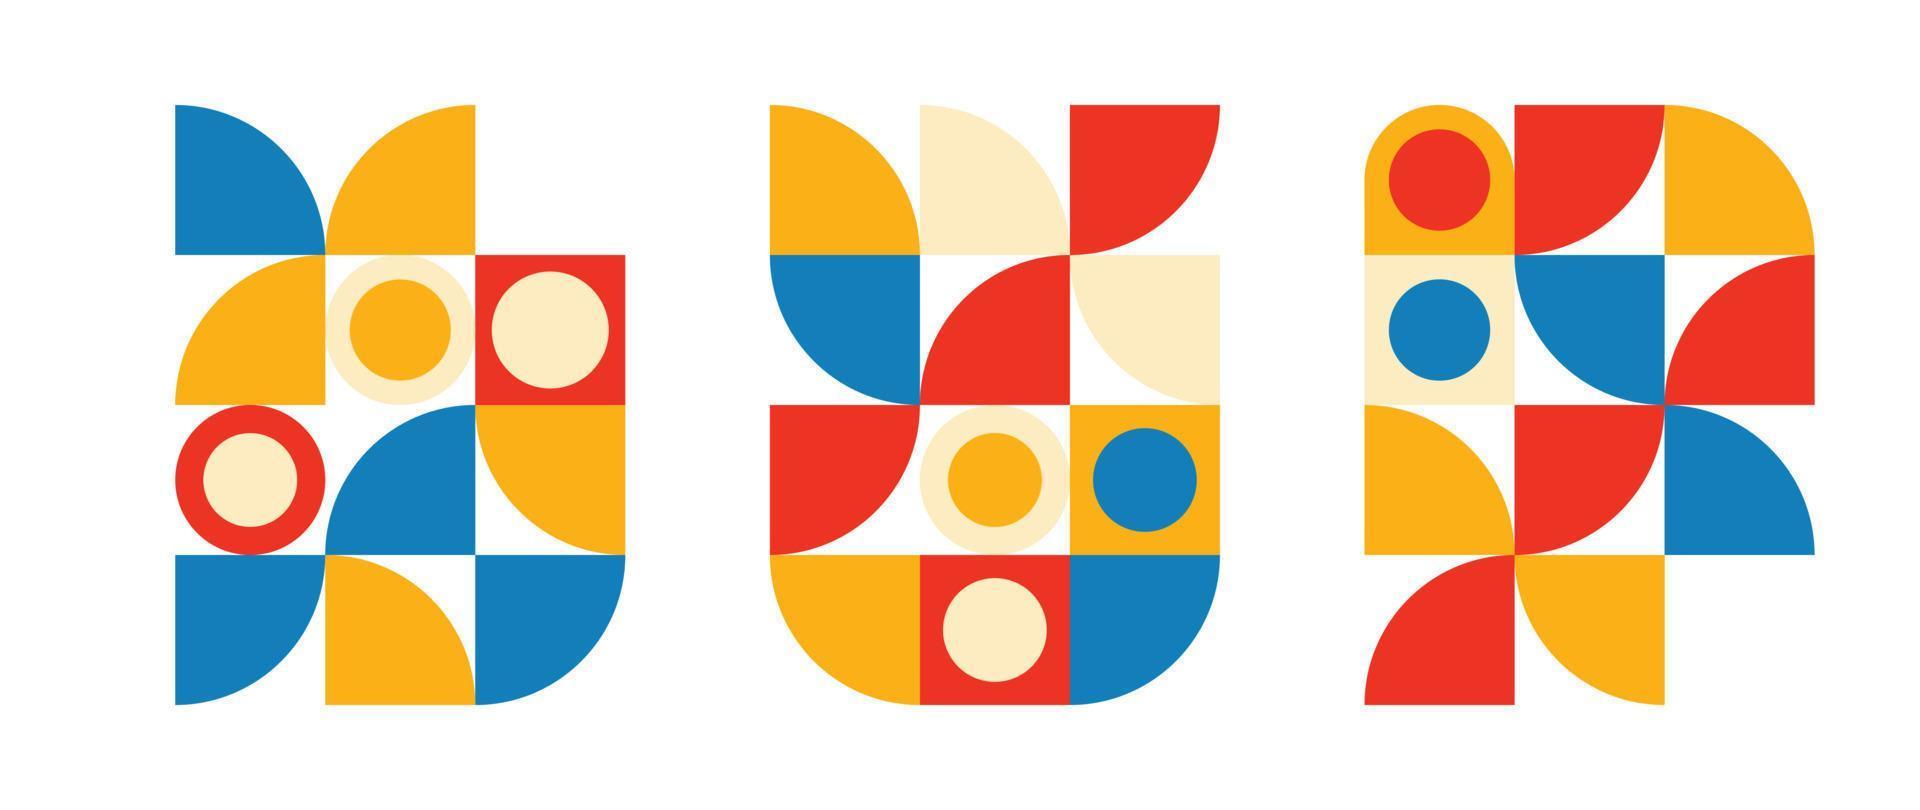 conjunto de elementos de patrón geométrico en estilo de mediados de siglo. colección retro abstracta de coloridos círculos rojos, amarillos, azules y formas cuadradas. diseño moderno para portada, tarjeta de visita, afiche, arte mural. vector